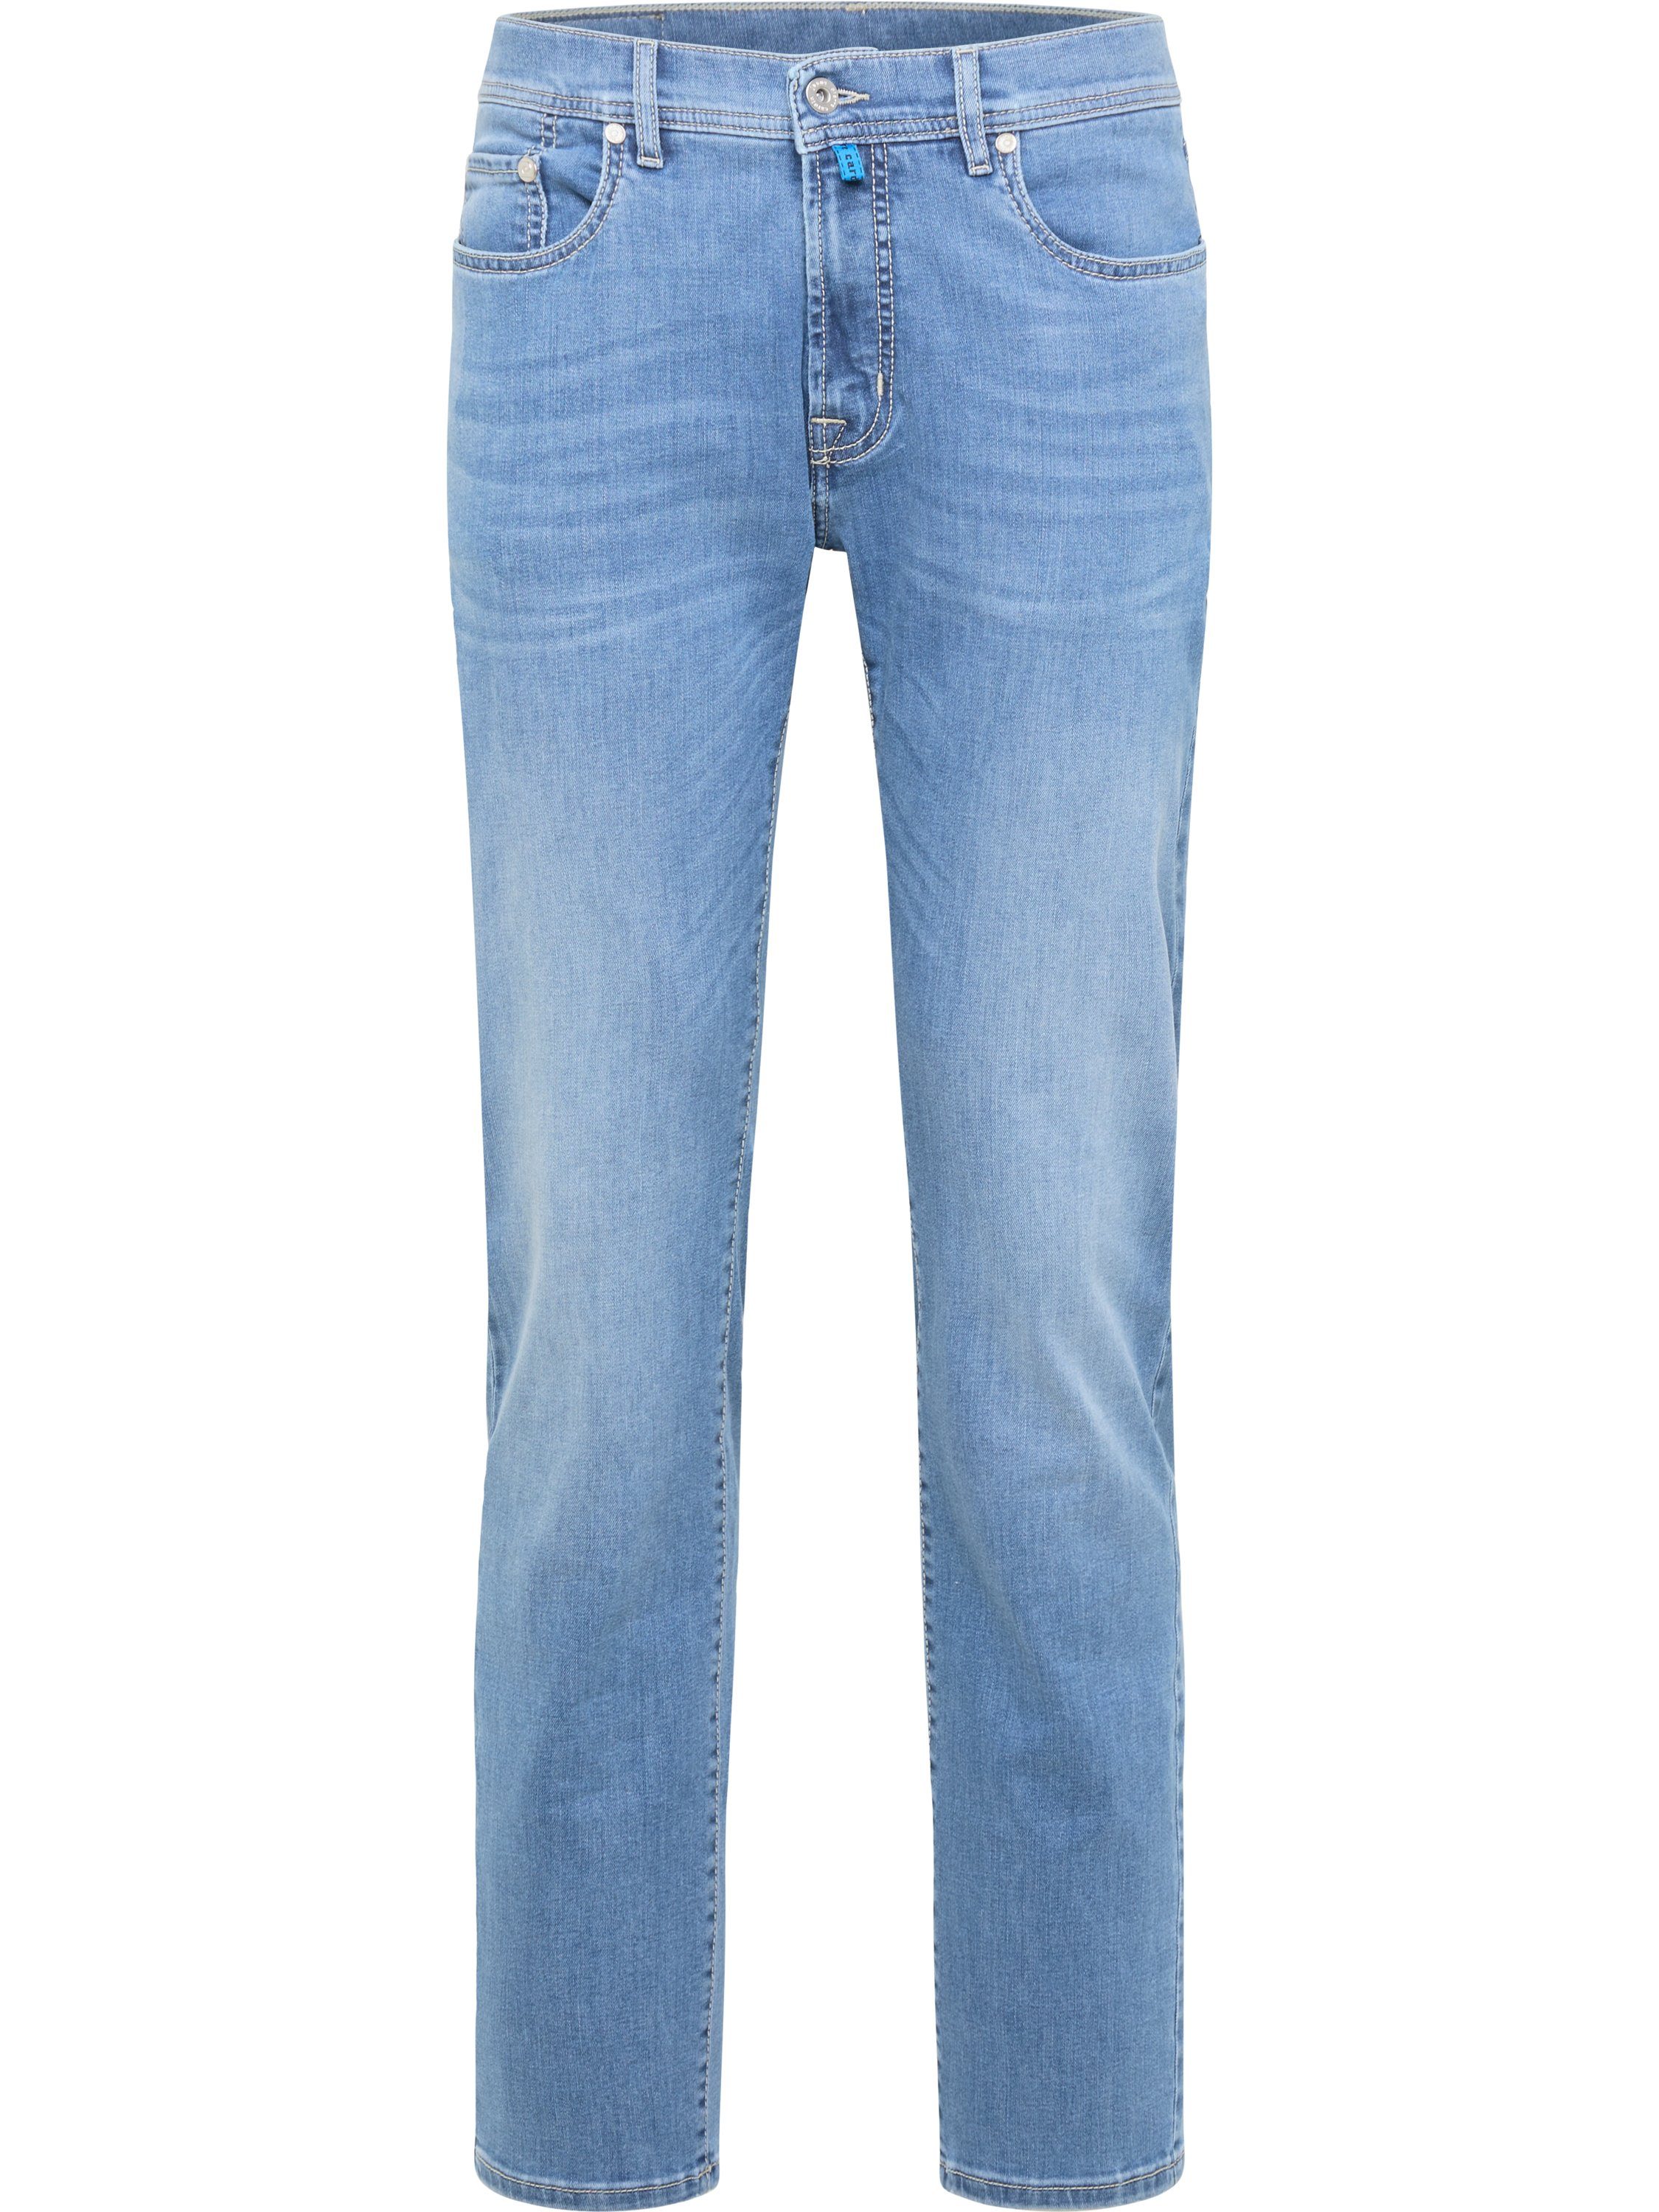 Pierre Cardin 5-Pocket-Jeans PIERRE CARDIN LYON soft vintage blue 38915 7713.02 - Konfektionsgröße/